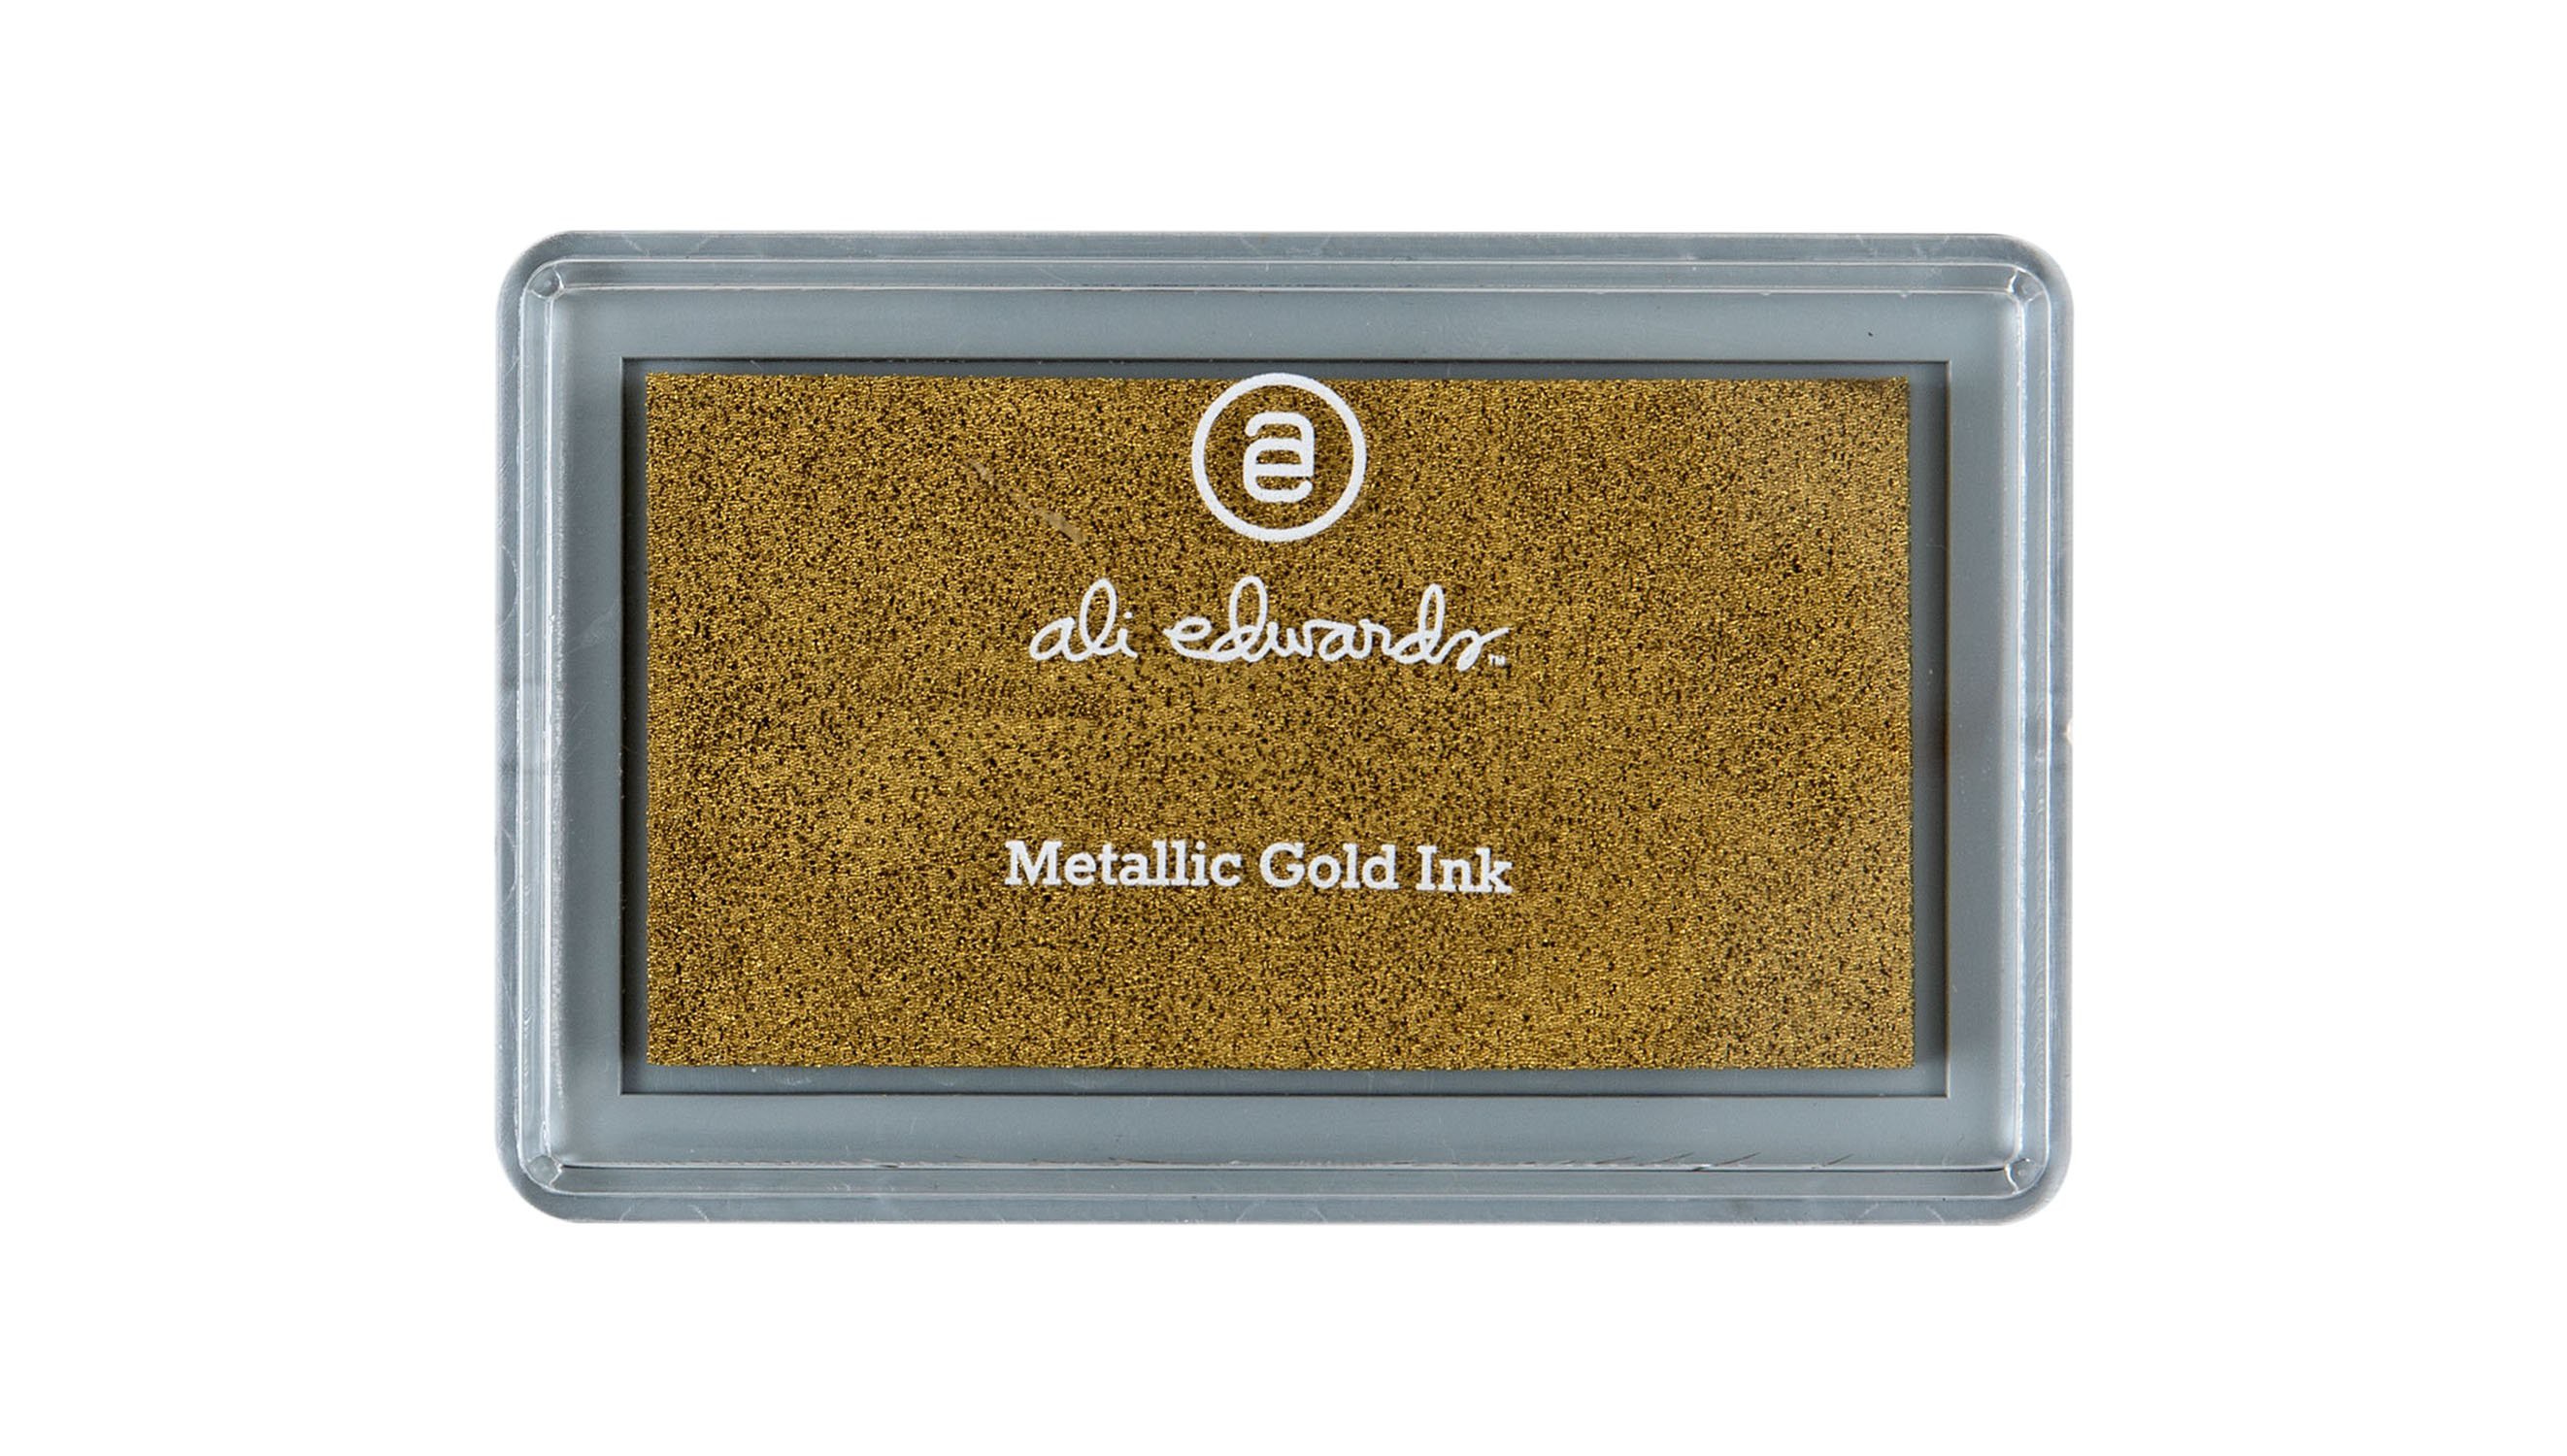 Metallic Gold Ink